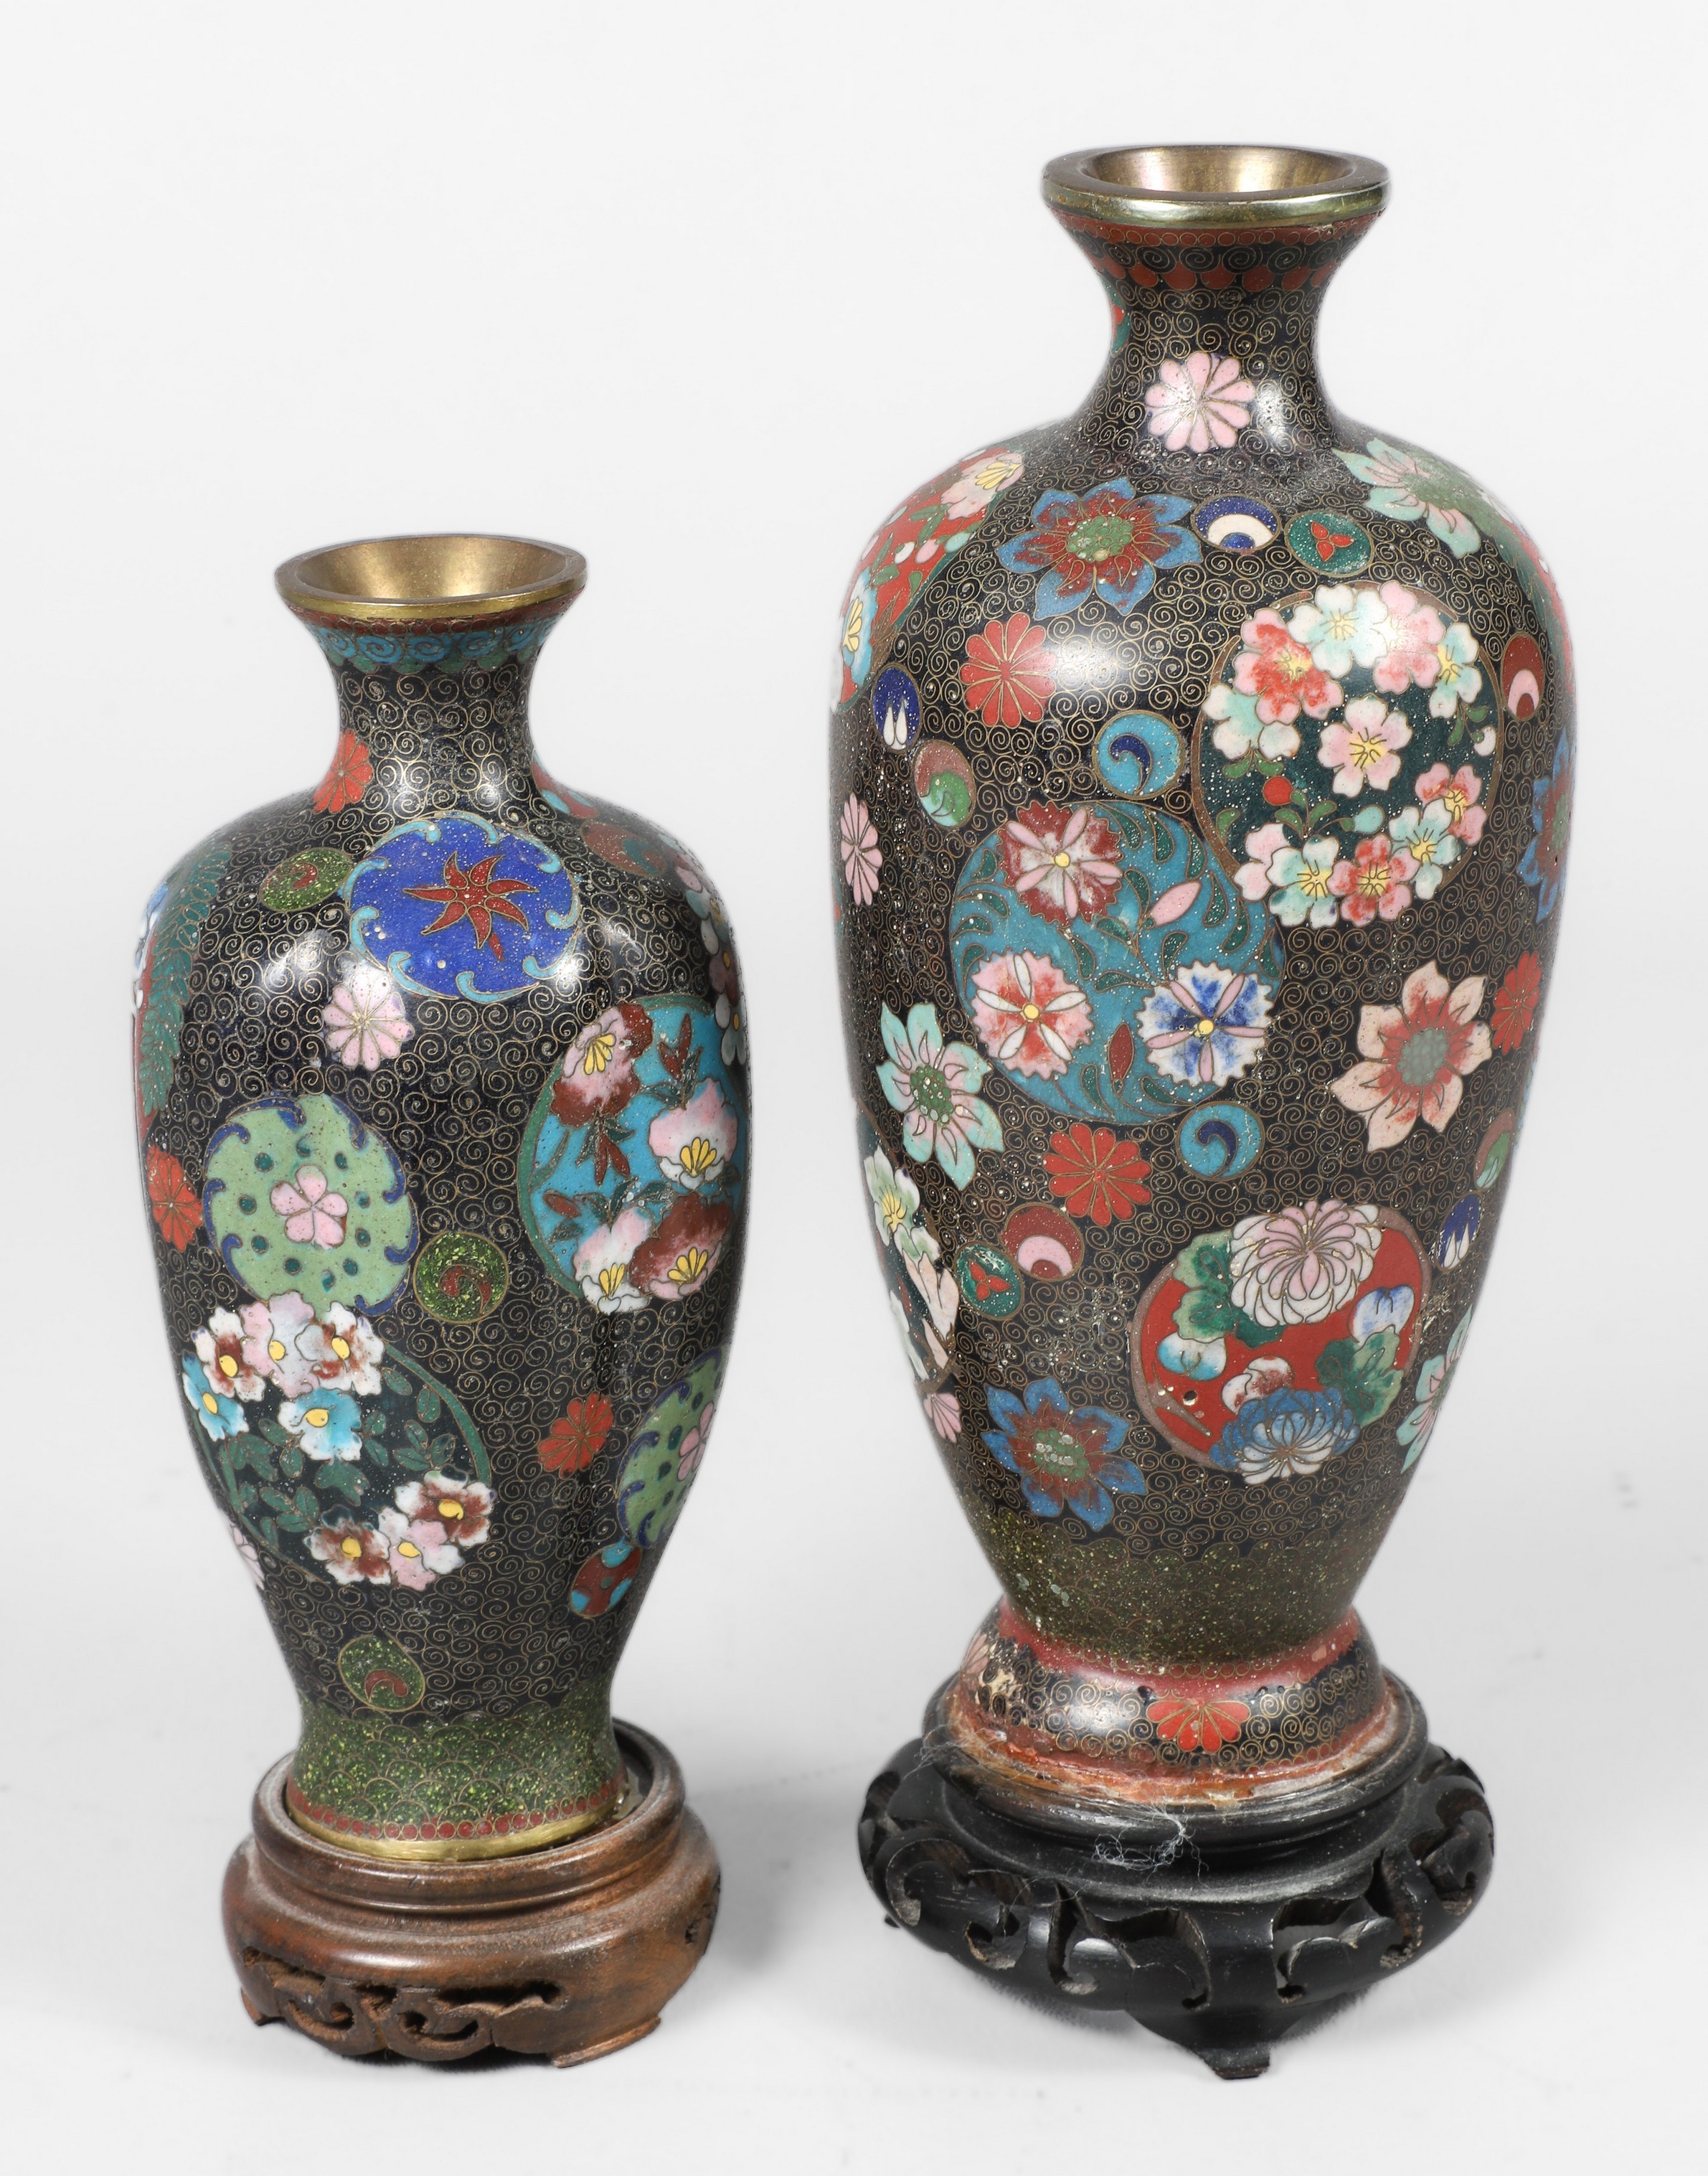  2 Japanese cloisonne enamel vases  2e08c8